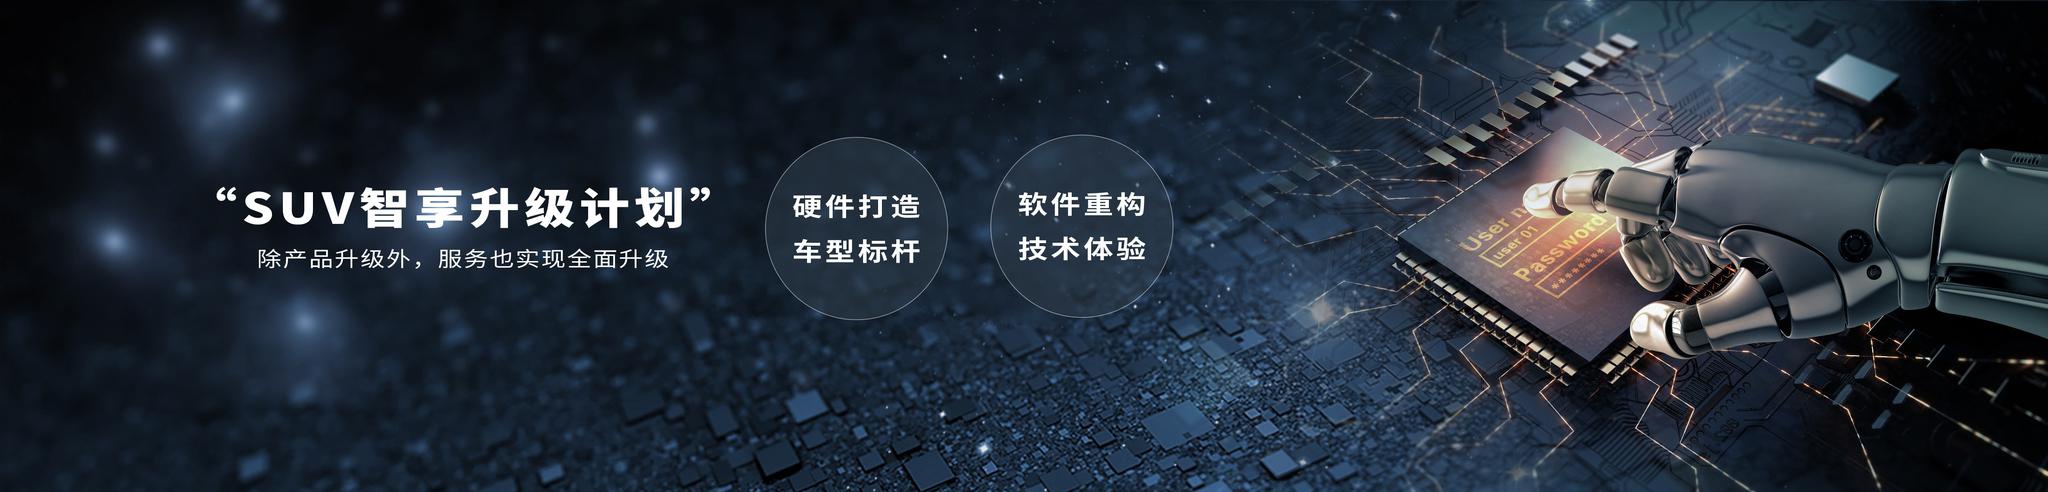 东风日产发布“SUV智享升级计划” 主打智能出行